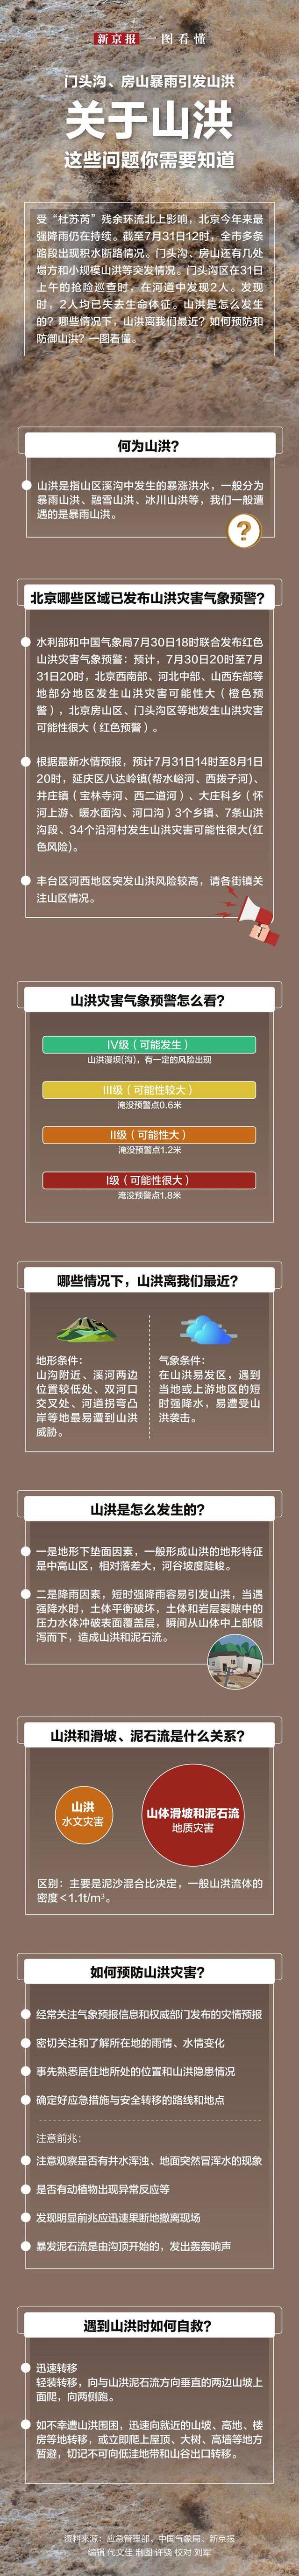 资料来源：中国天气网、气象北京、央视新闻、新京报